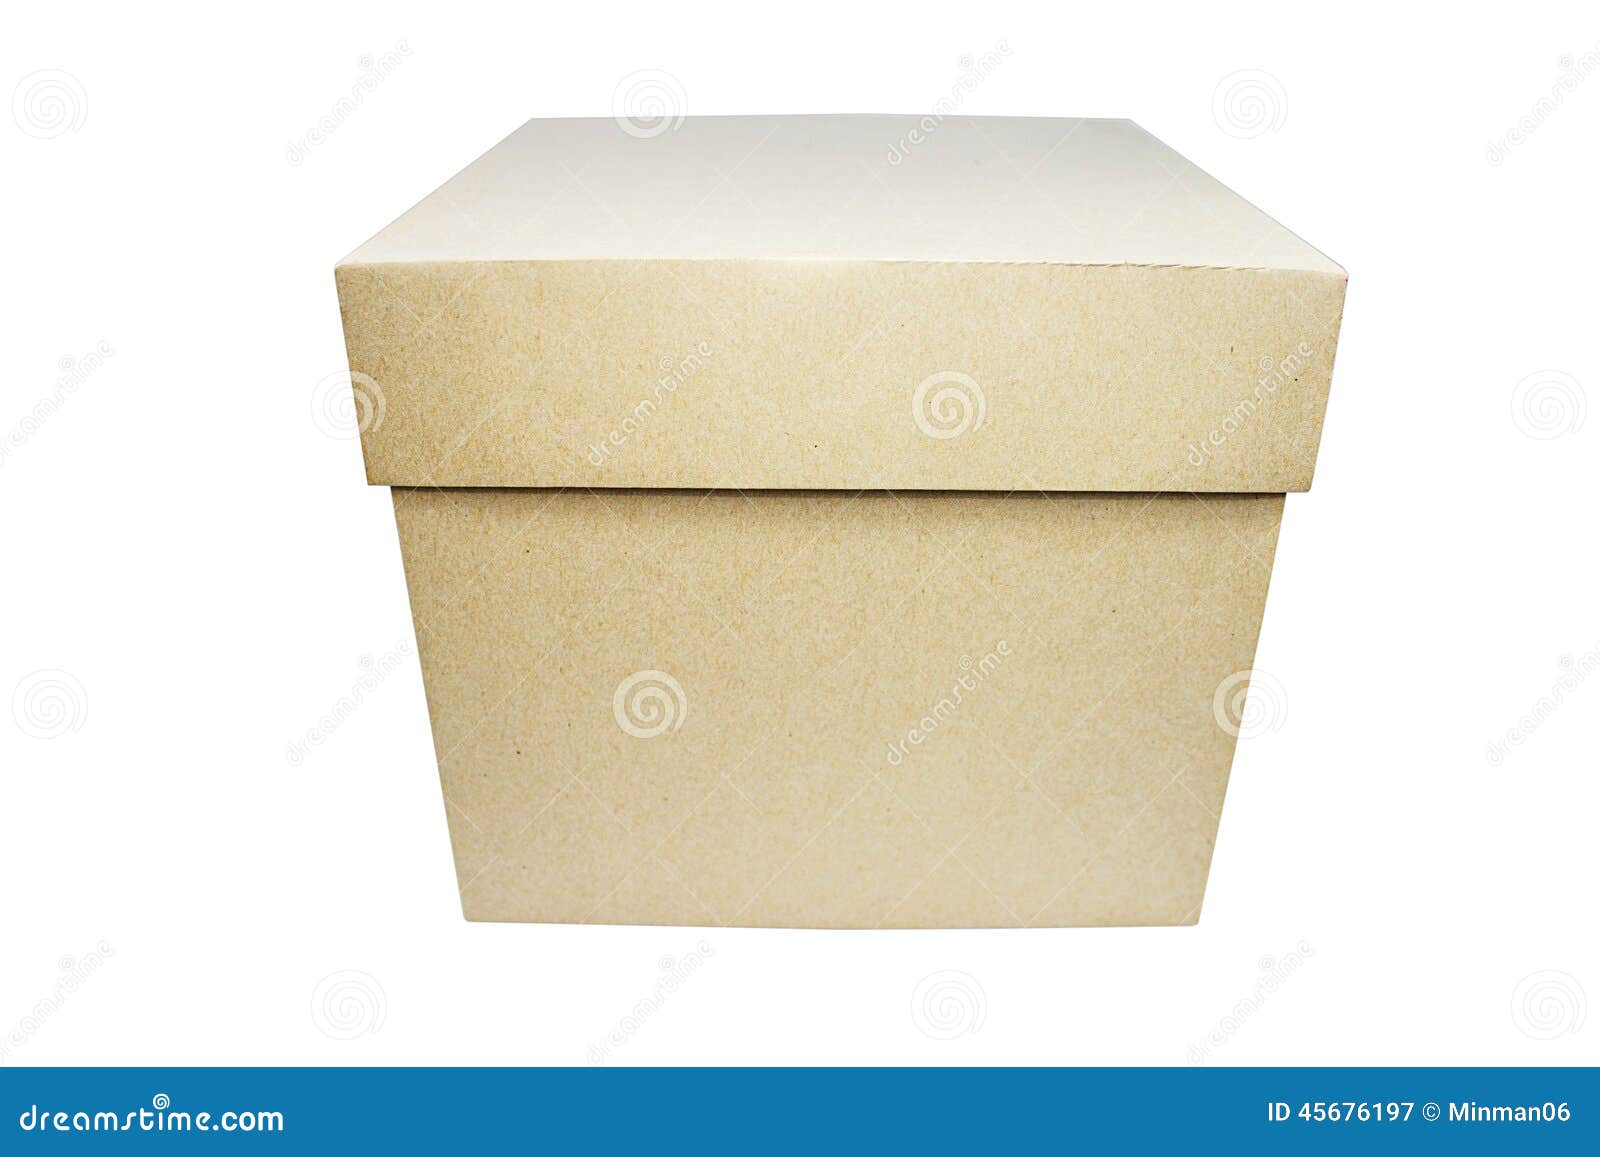 Есть коробка изображенная. Простая коробка. Коробка с крышкой вид сбоку. Коробка простая картонная белая. Коробка стоящая.